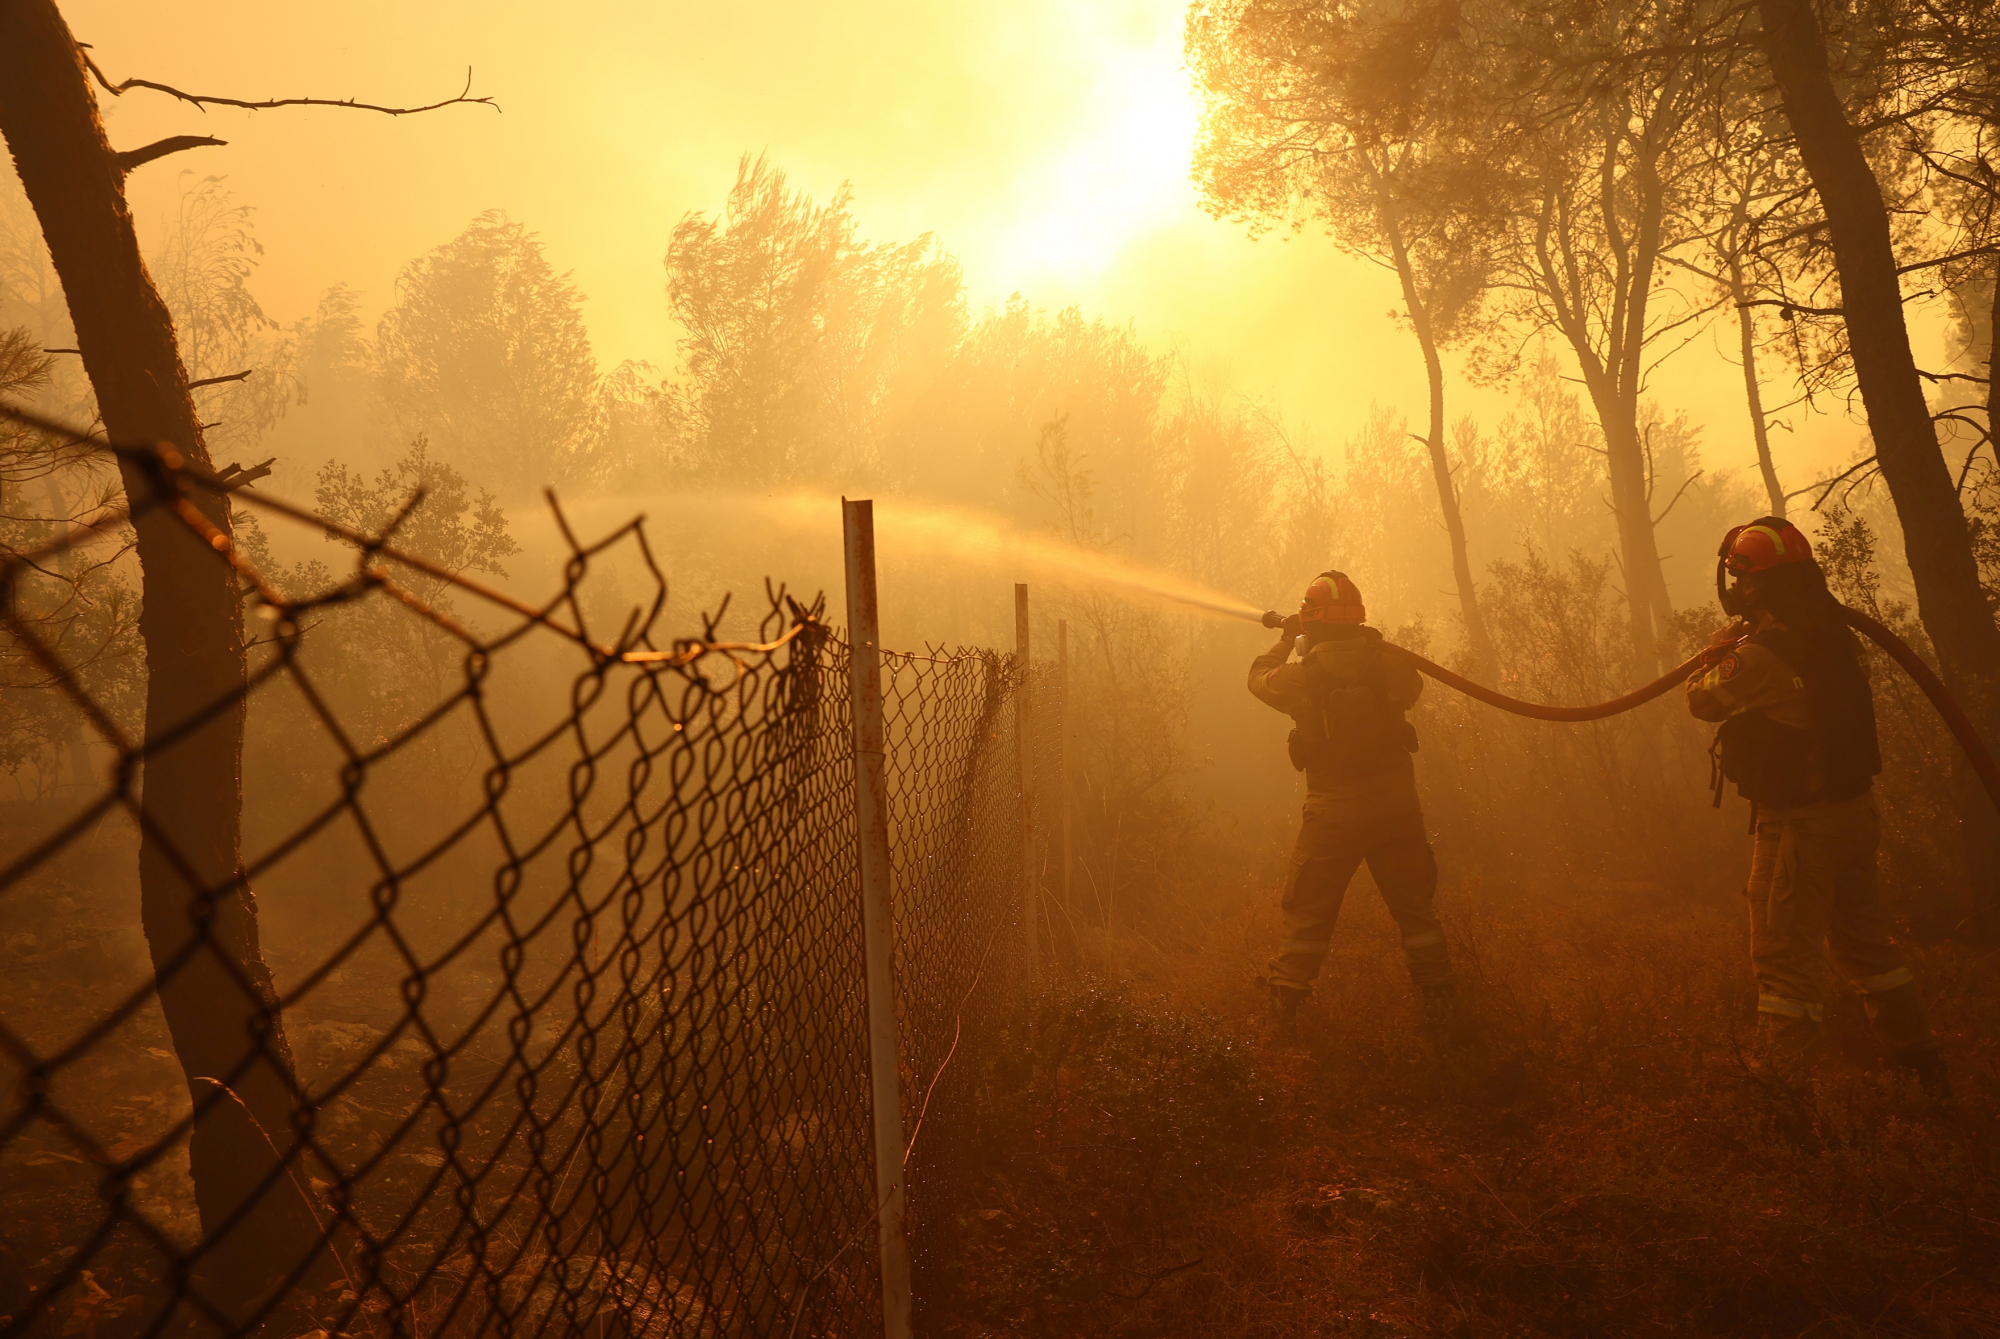 Πυρκαγιές: «Αναξιόπιστοι» οι χάρτες κινδύνου της Πολιτικής Προστασίας